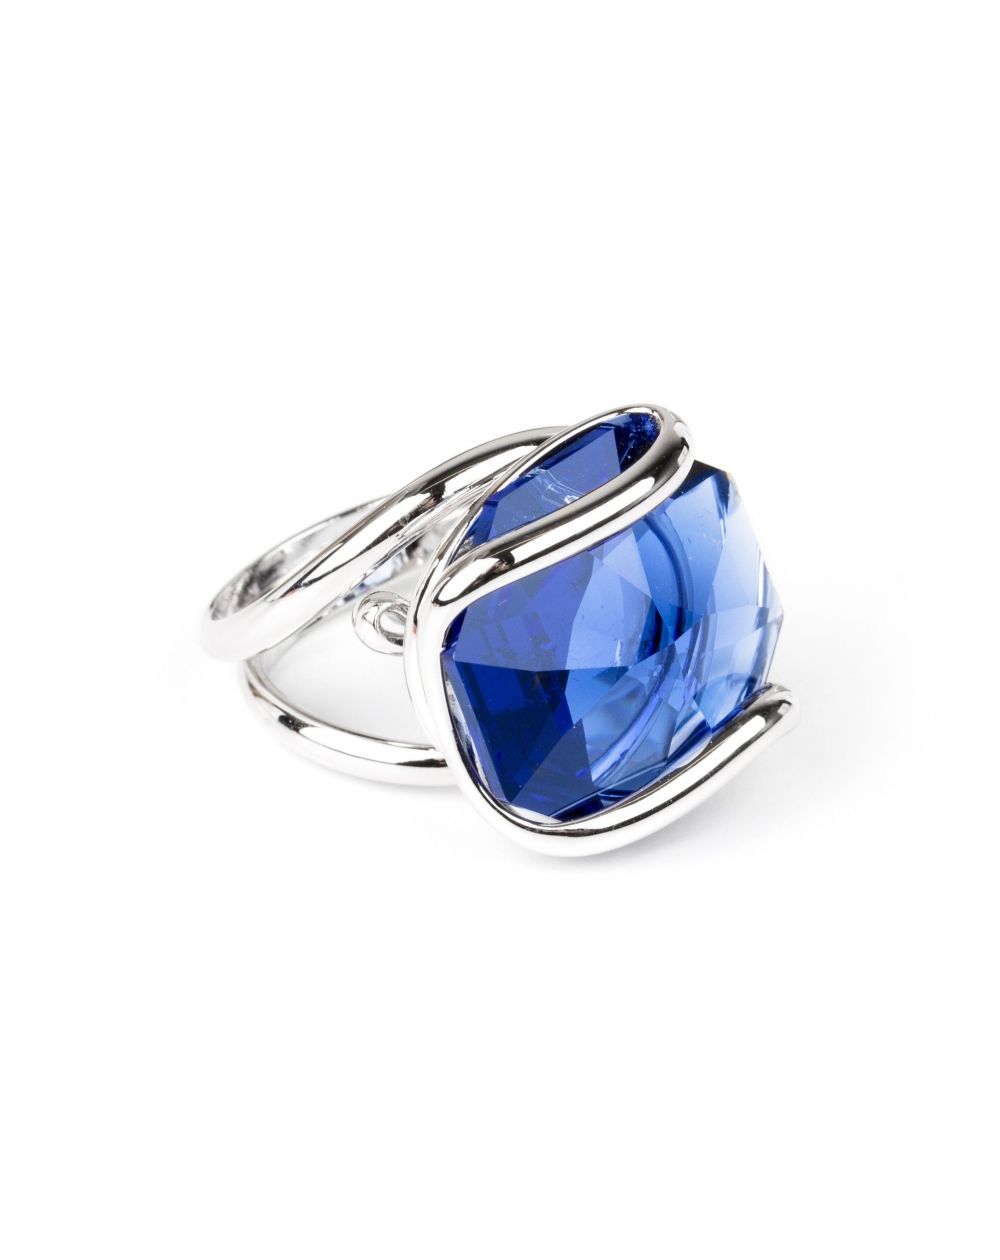 Andrea Marazzini bijoux - Bague cristal Swarovski bleu foncé